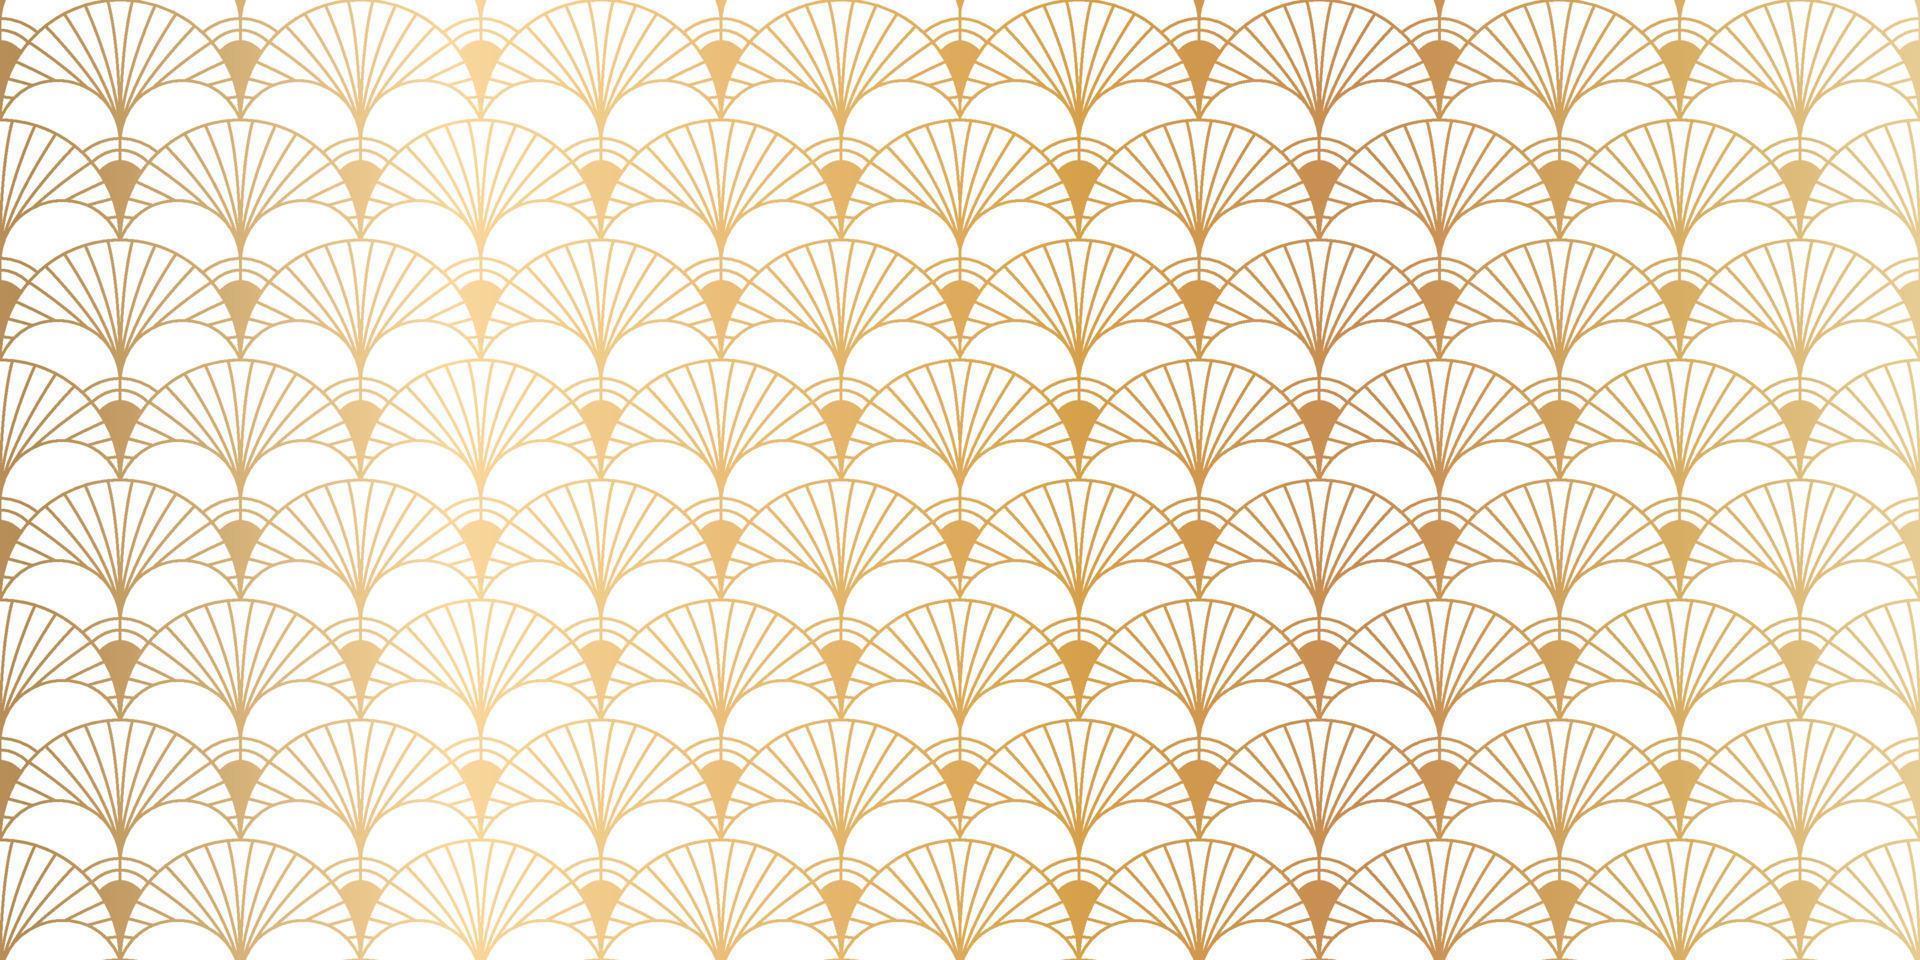 Luxus Art Deco Musterdesign Hintergrund Vektor. abstrakter eleganter jugendstil mit zarter goldener geometrischer linie vintage dekorativer minimalistischer texturstil. Design für Tapeten, Banner, Karten. vektor